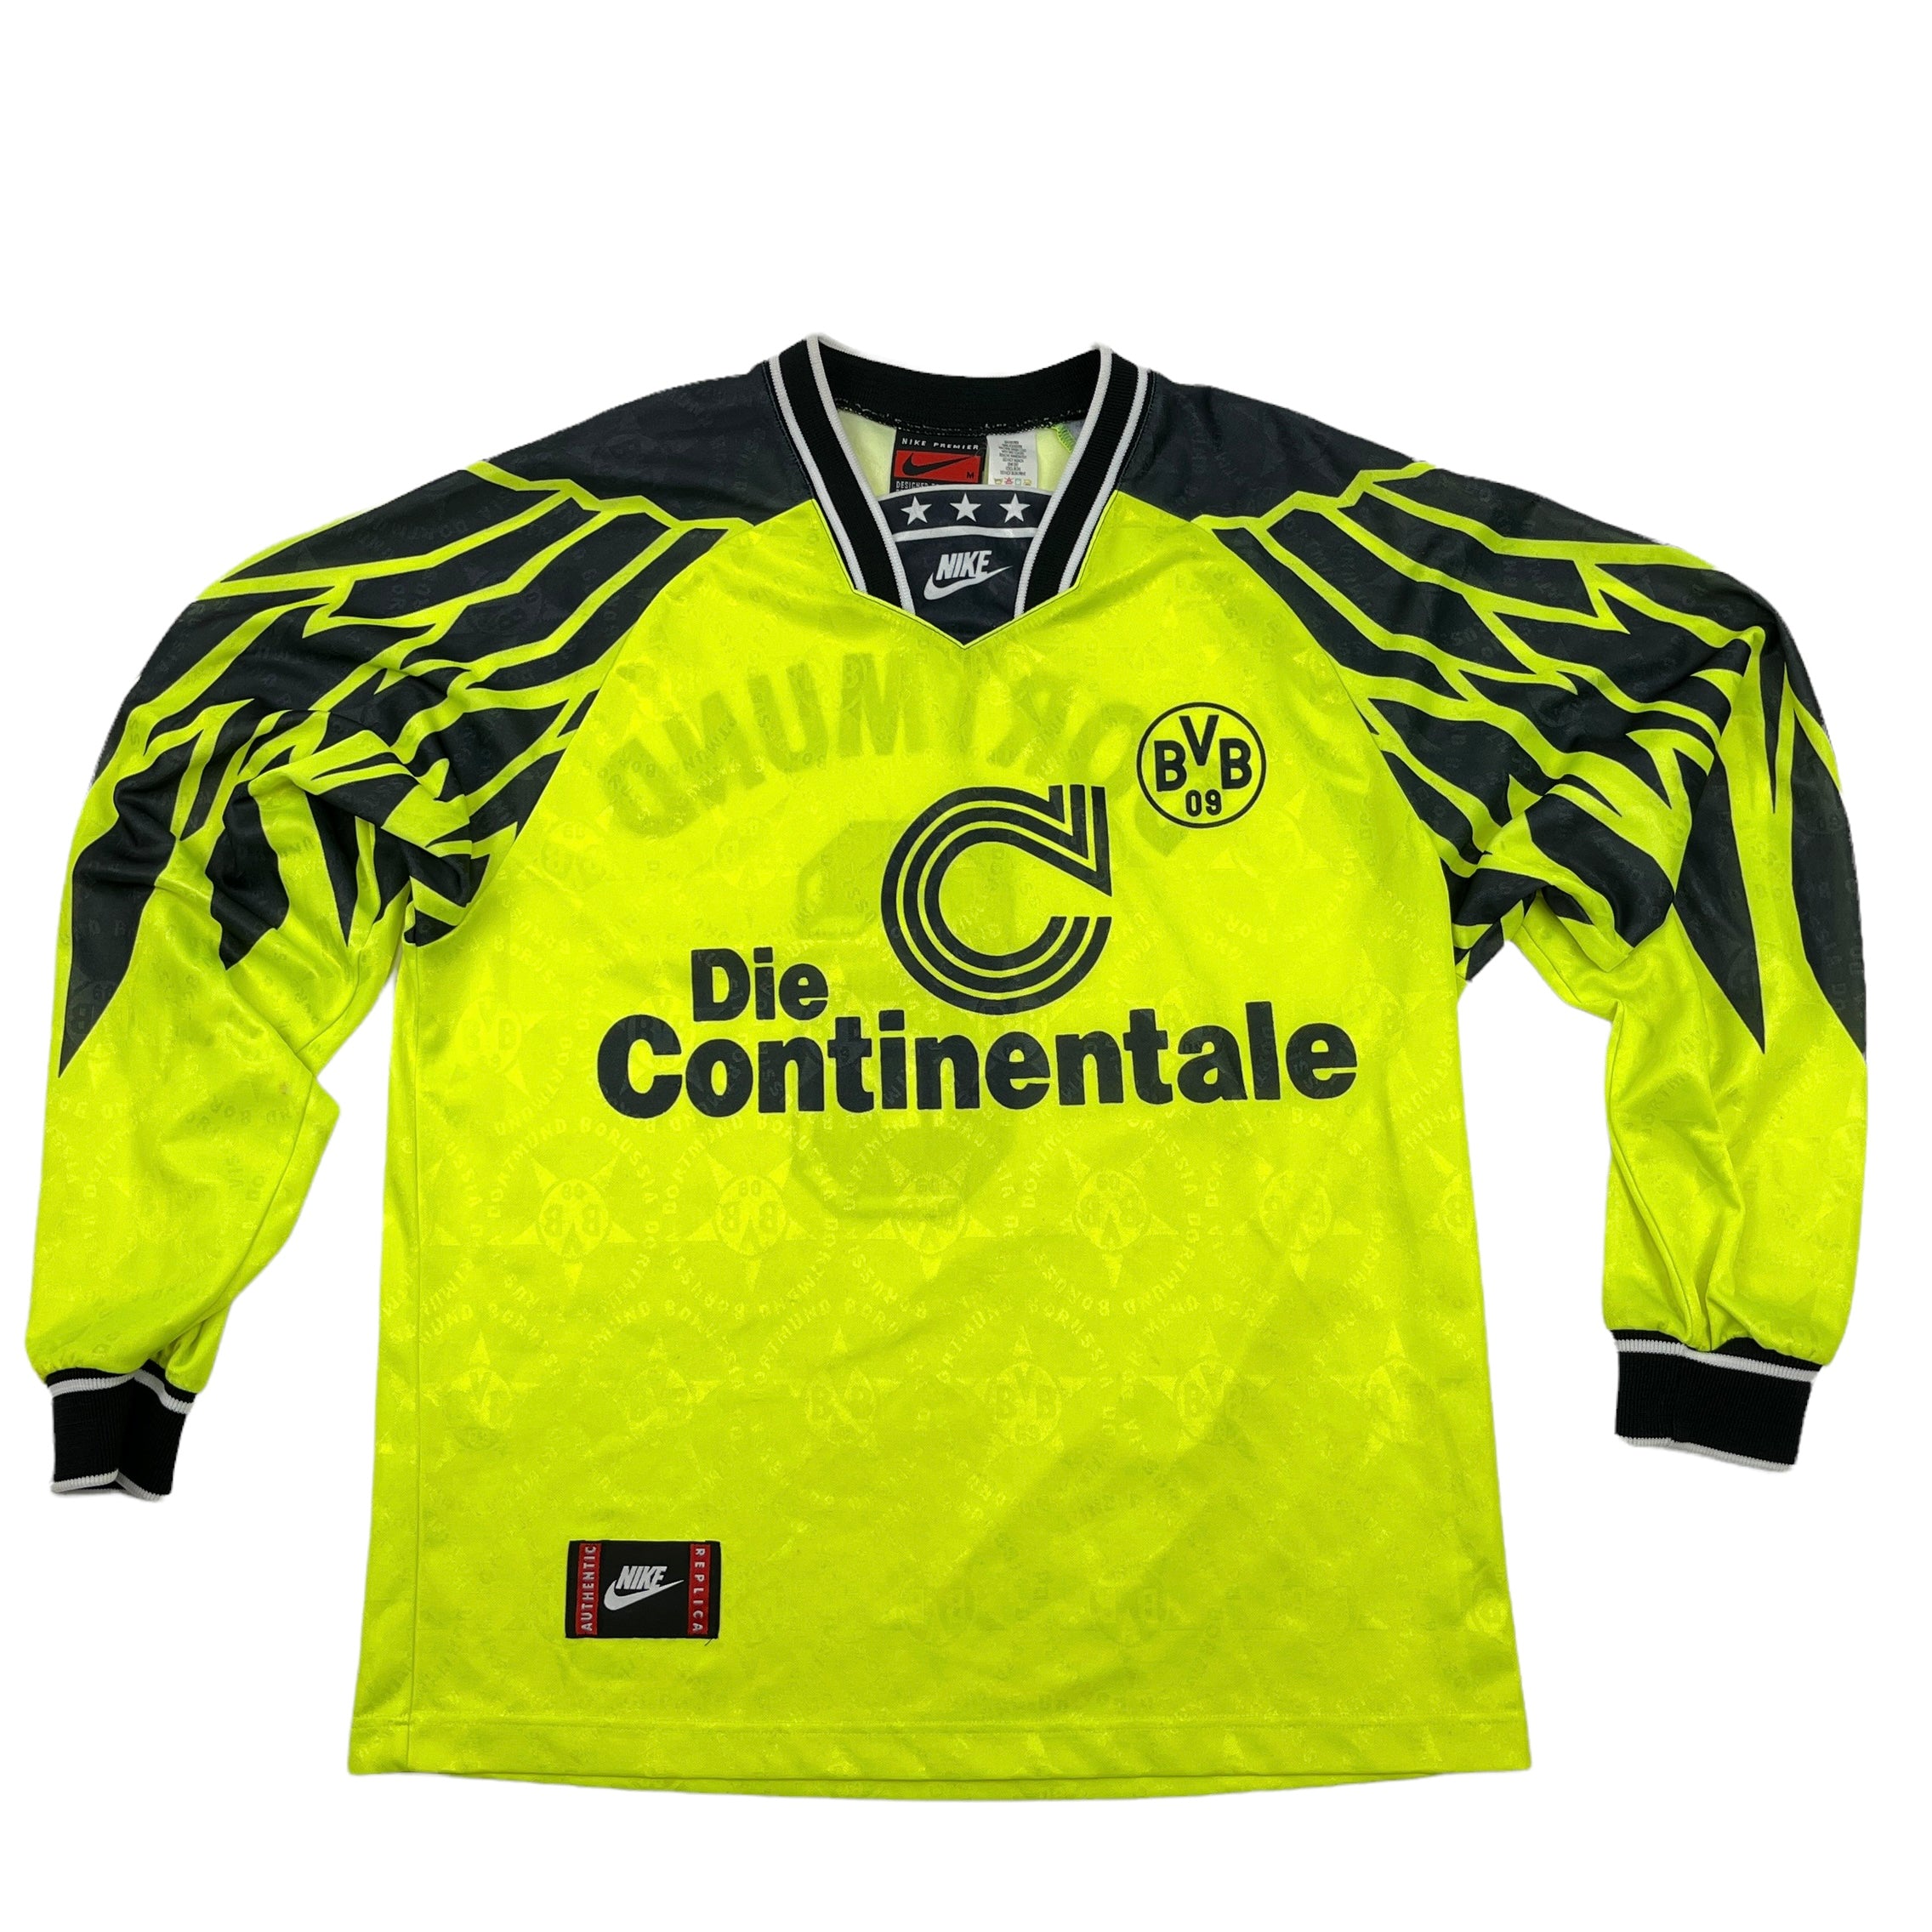 Elektricien Grootte kalkoen 0896 Nike Borussia Dortmund 94/95 Home Jersey – PAUL'S FANSHOP